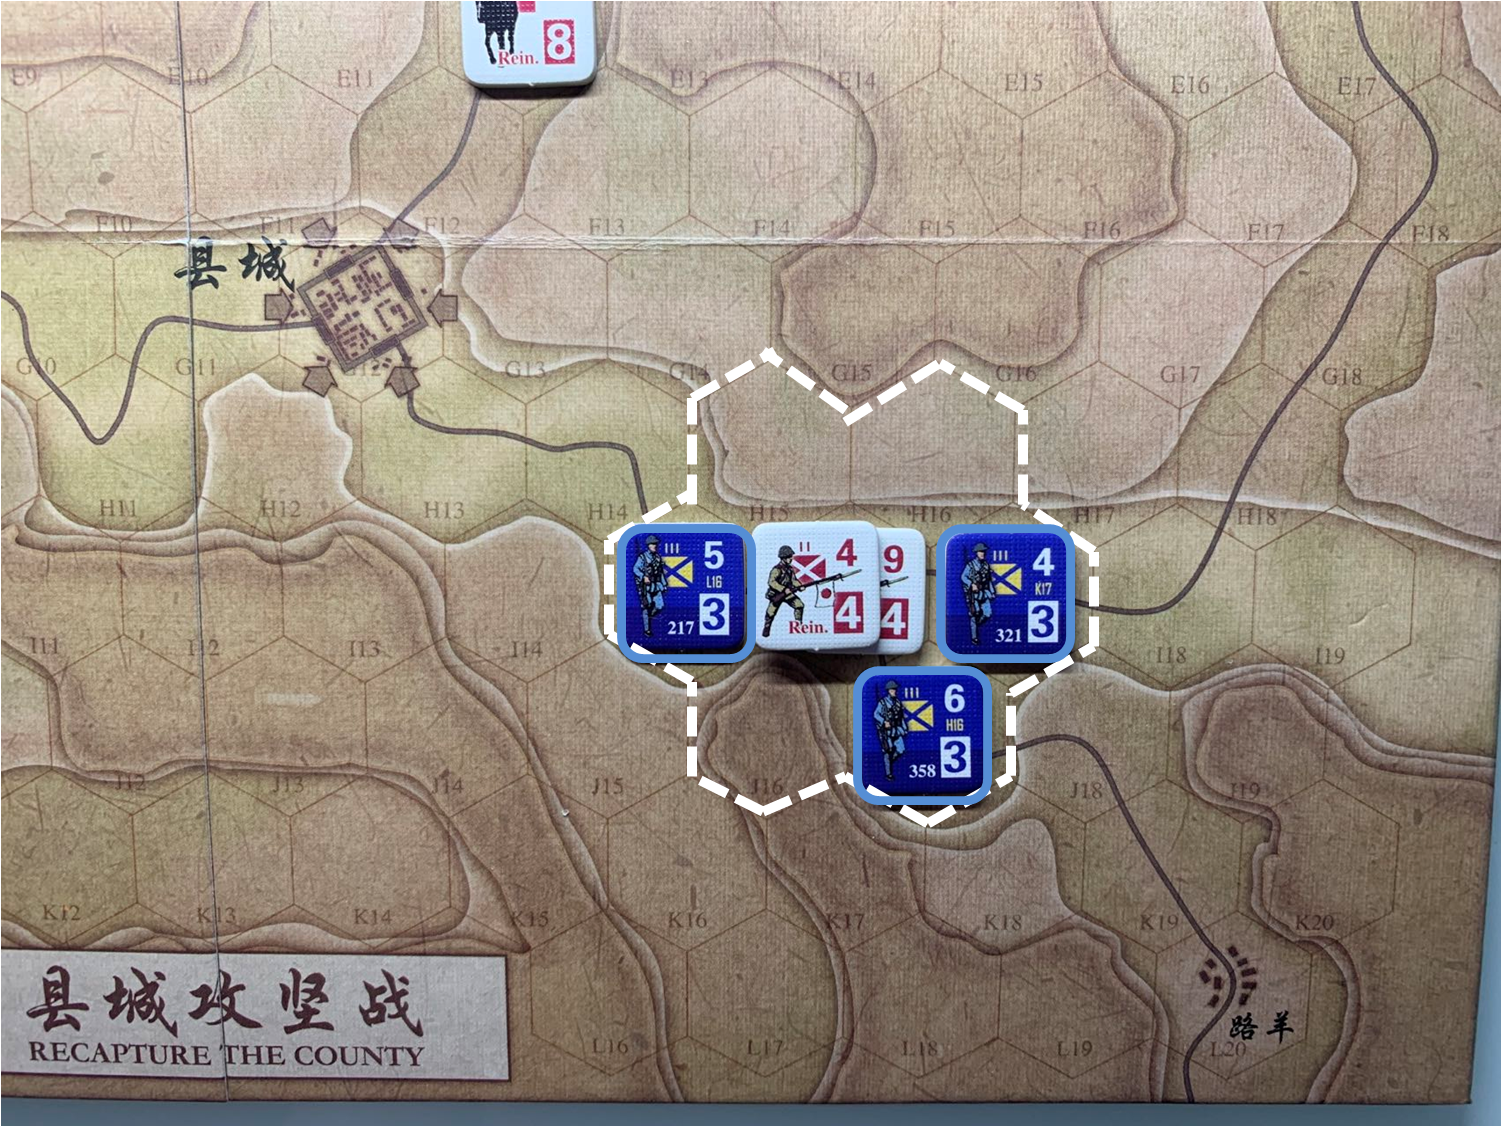 第四回合國軍正規軍部隊對於移動命令1的執行結果，及對應方向日軍增援部隊控制區覆蓋範圍